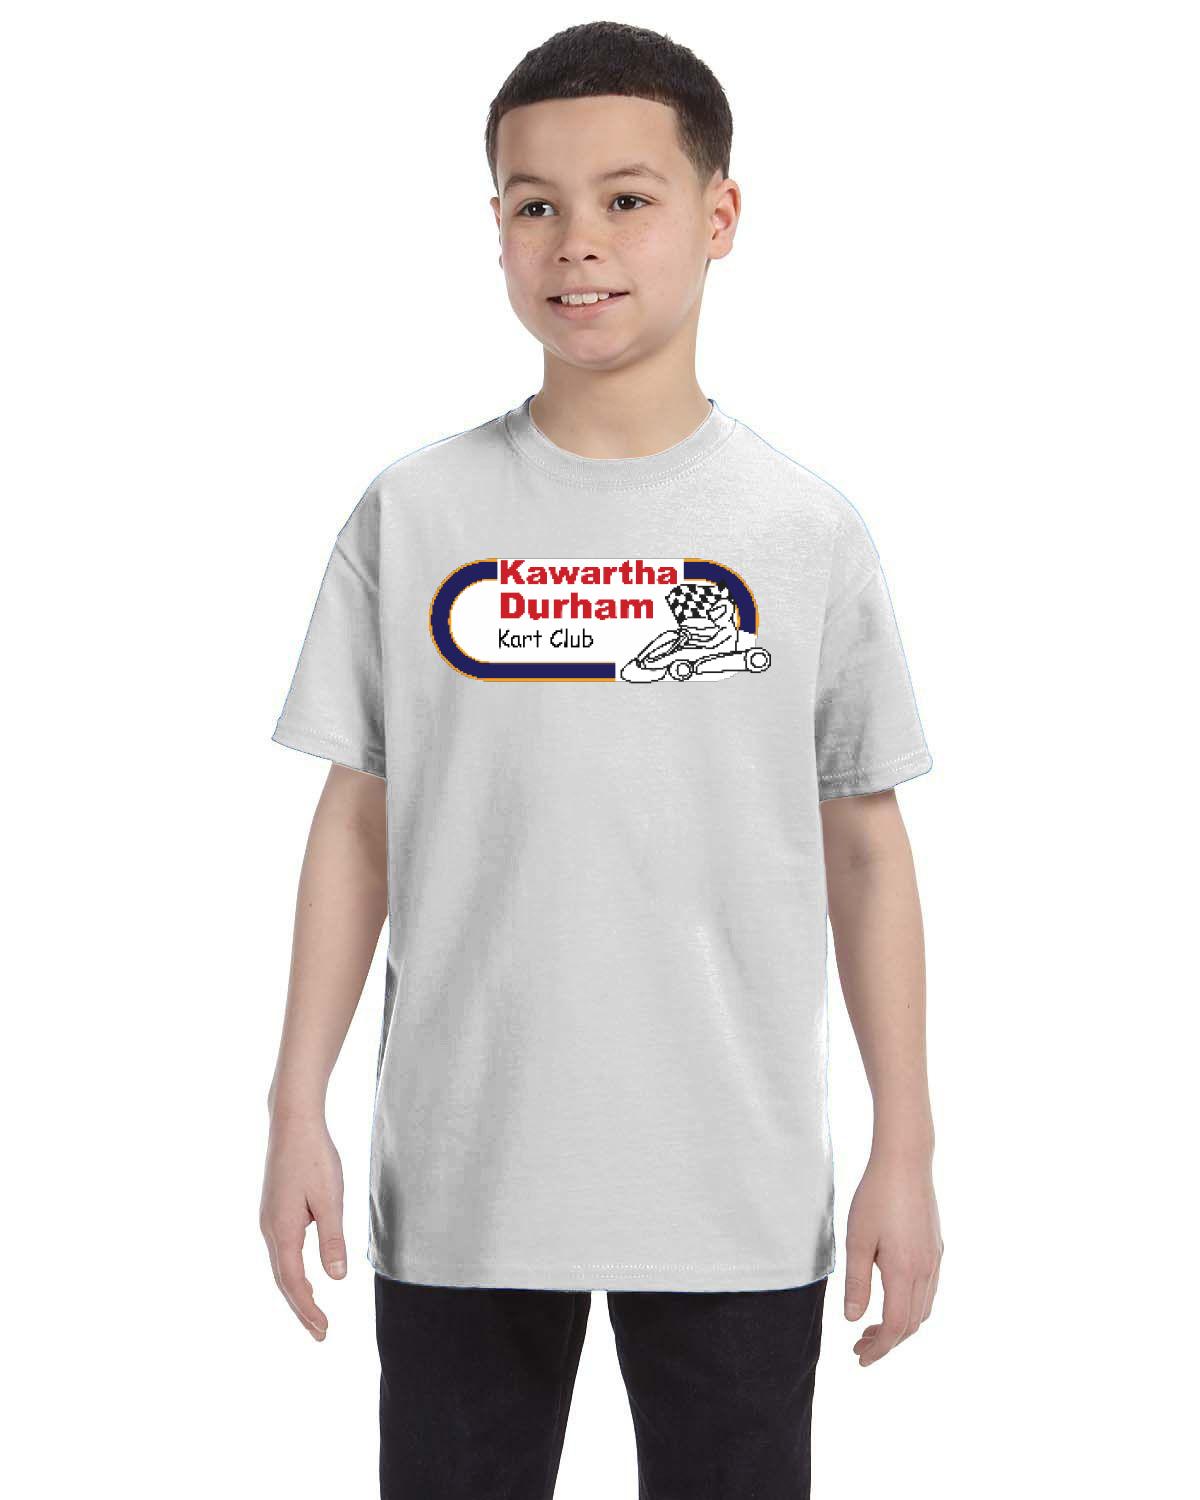 Kawartha Durham Kart Club Kid's T-Shirt